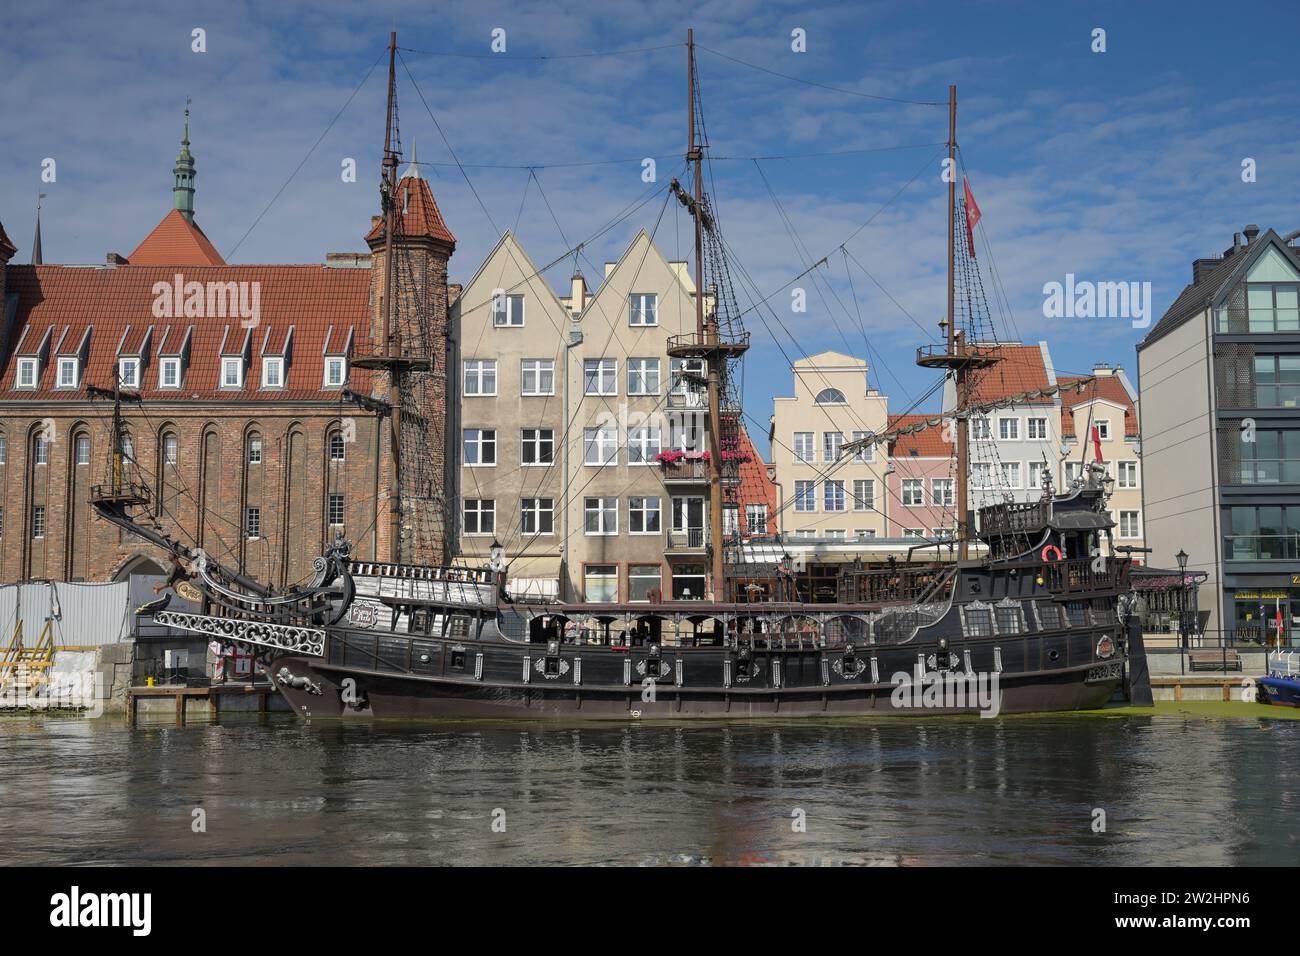 Nachbau Piratenschiff Czarna-Perla, Ausflugsboot auf der Motlawa, Altstadt, Danzica, Woiwodschaft Pommern, Polen Foto Stock